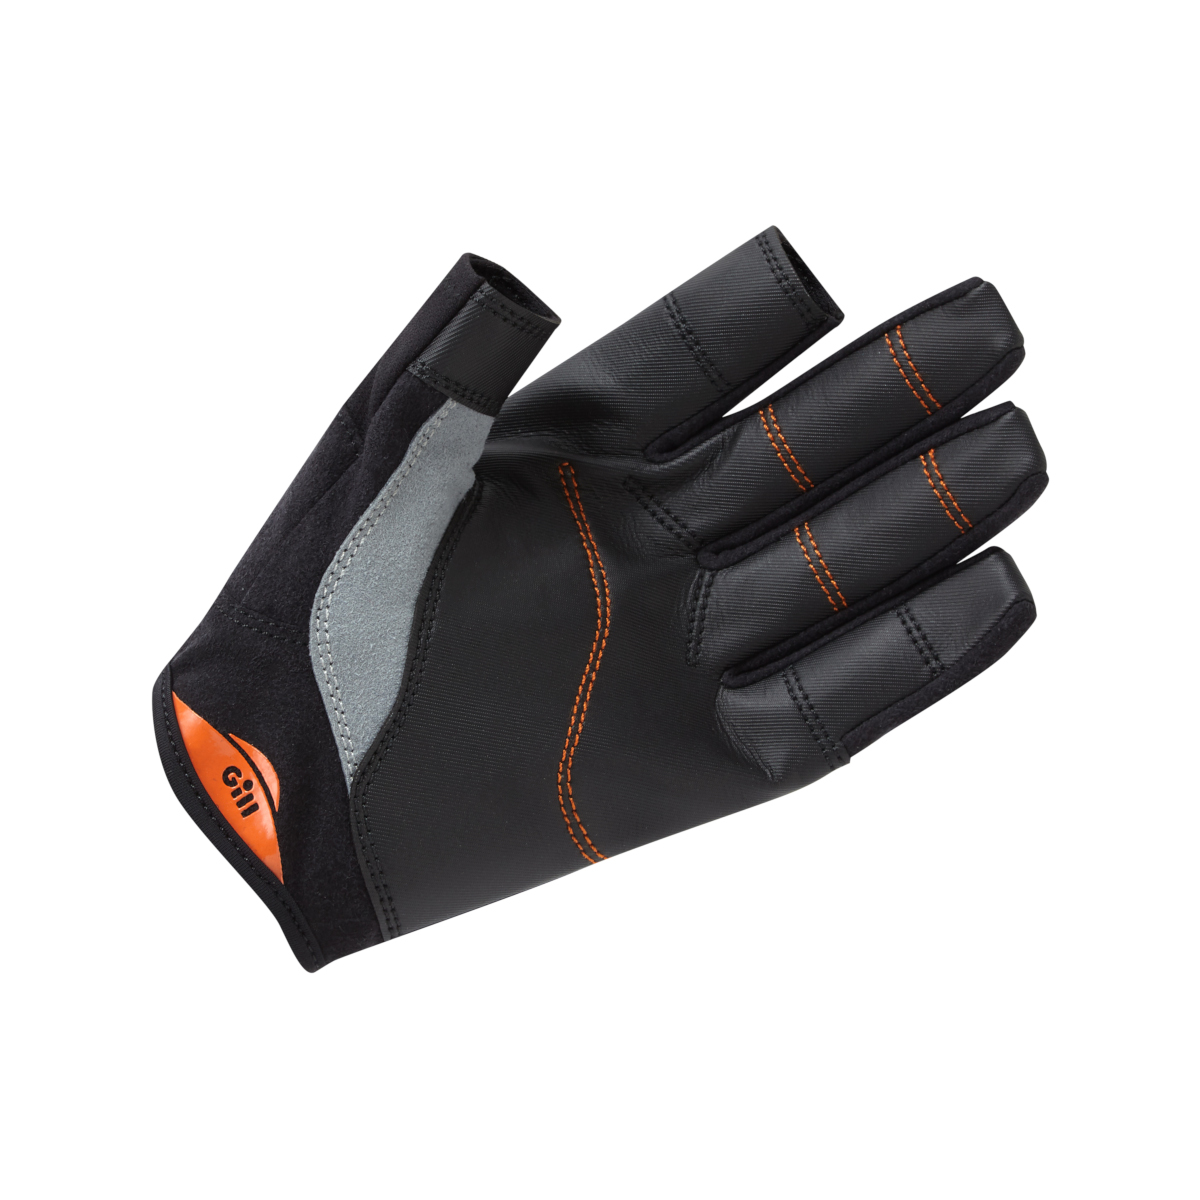 Gill Championship gants de voile à doigts longs - noir, taille XXL